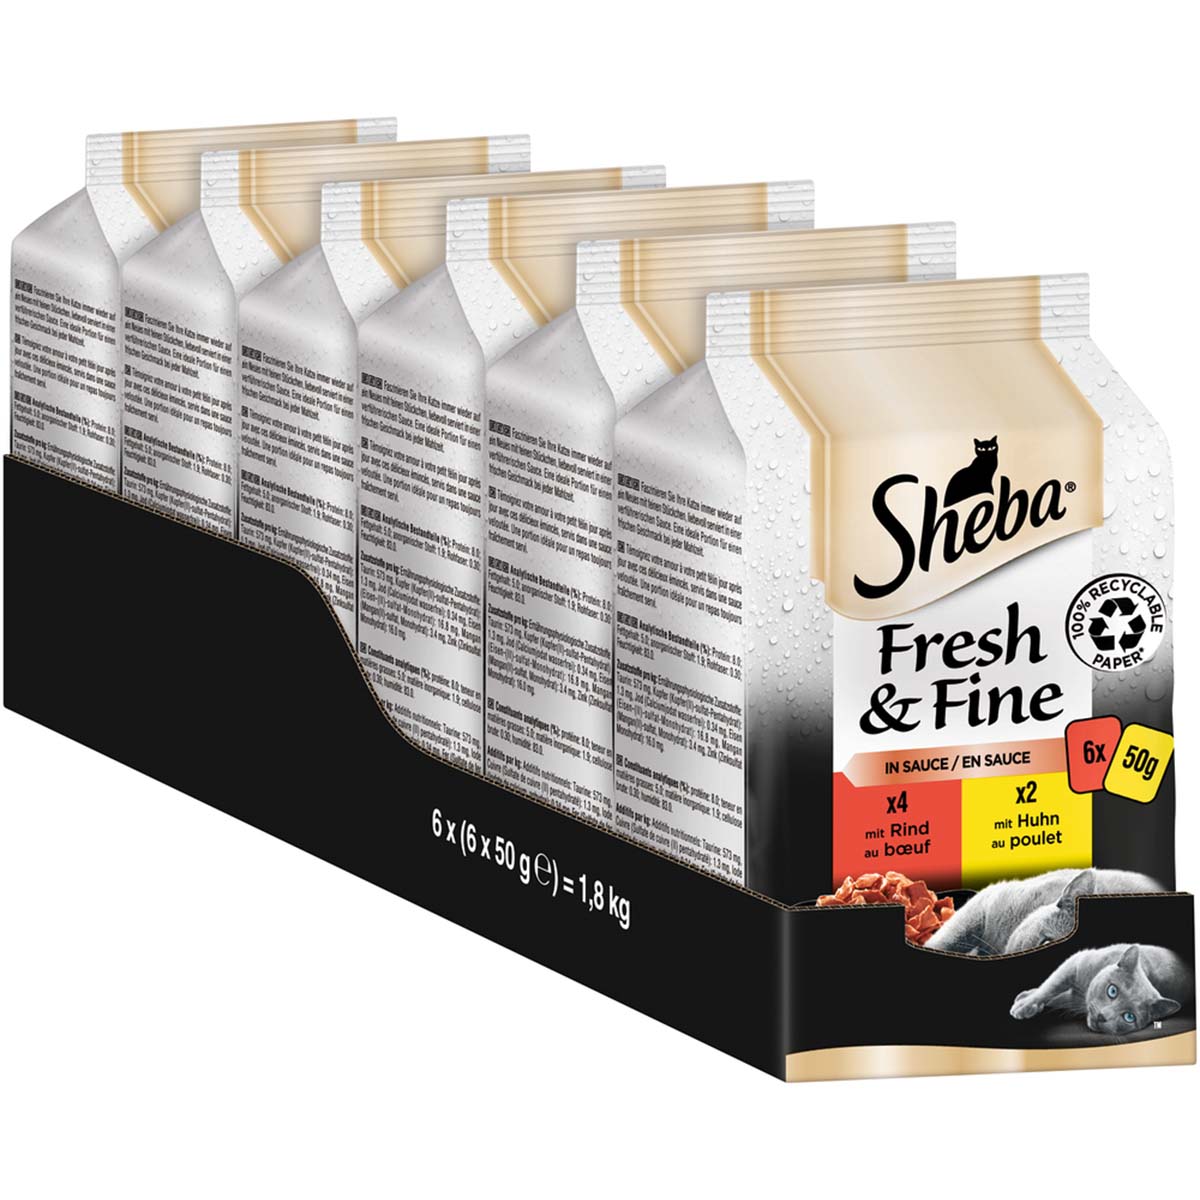 Sheba Fresh & Fine in Sauce mit Rind & Huhn 6x50g von Sheba